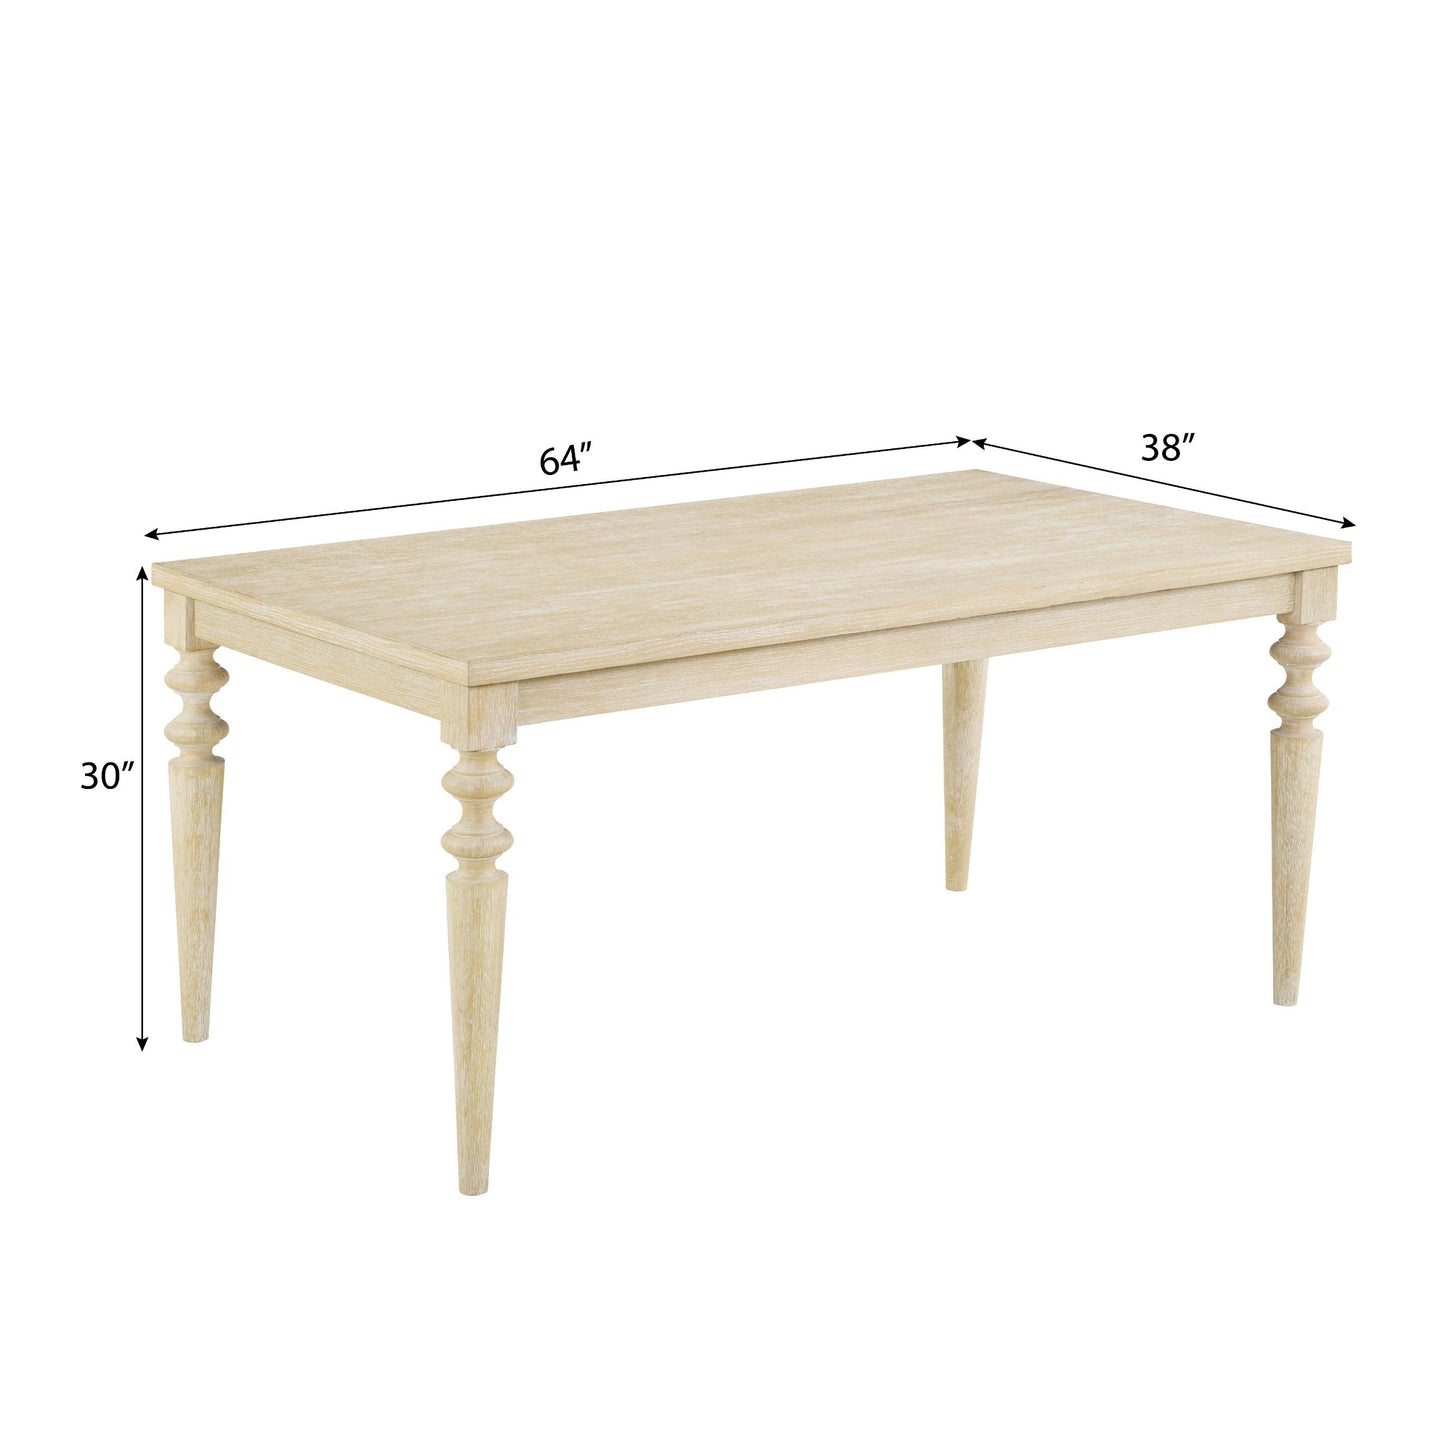 Amonia Urban Style Wired White Finish Wood Turned-Leg Dining Table